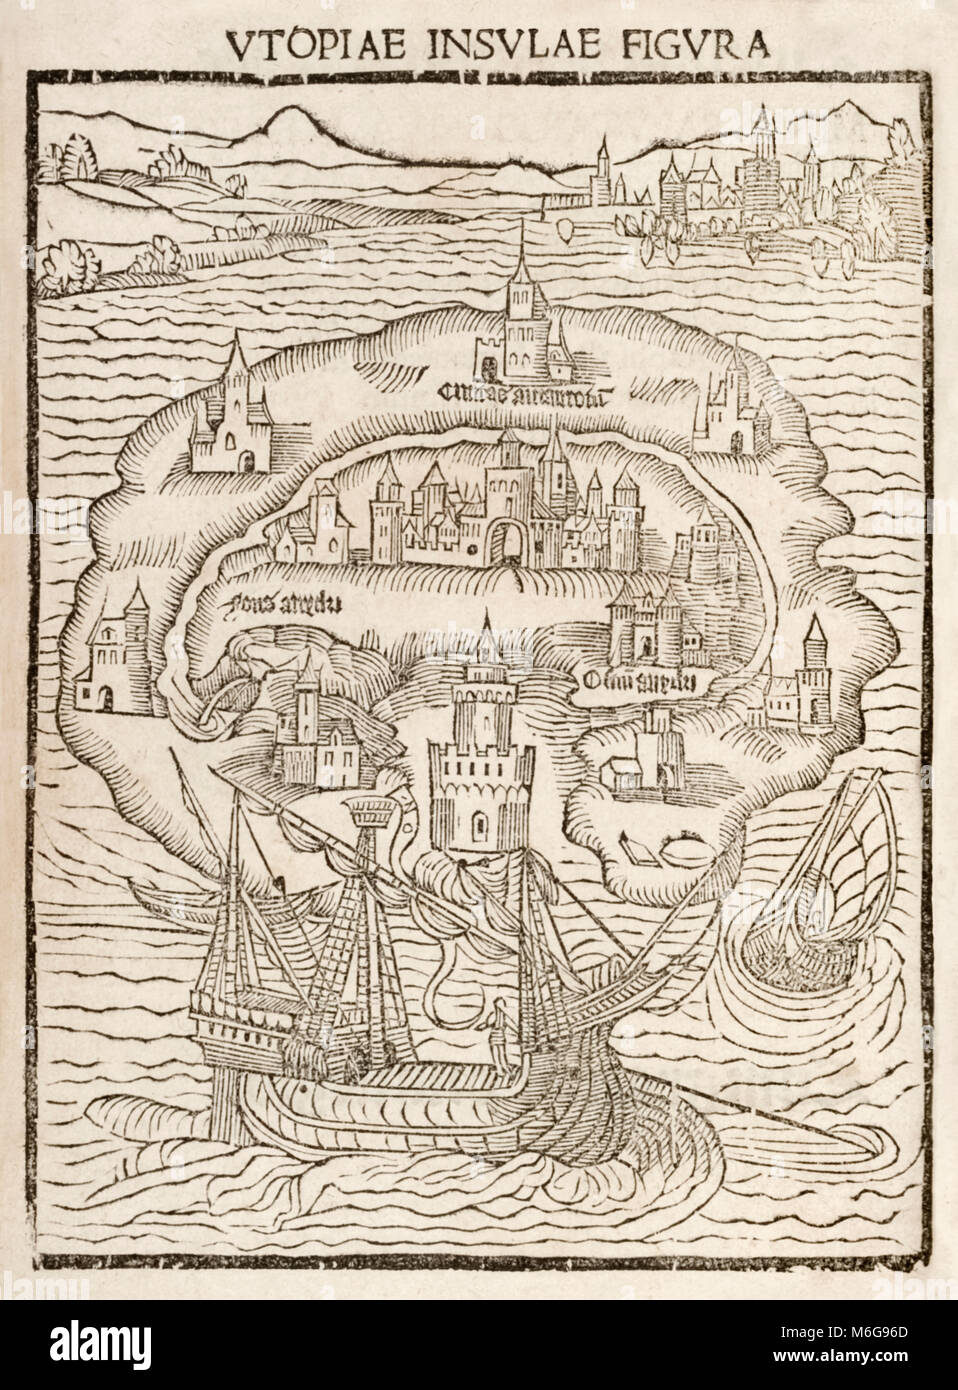 "Utopiae Insulae Figura" (Karte von die neue Insel Utopia) aus dem Jahr 1516 erste Ausgabe von "Utopia" von Thomas Morus (1478 - 1535). Holzschnitt zeigt die fiktive Insel, auf der eine ideale Gesellschaft von Reisenden Raphael Hythloday entdeckt wurde. Weitere Informationen finden Sie unten. Stockfoto